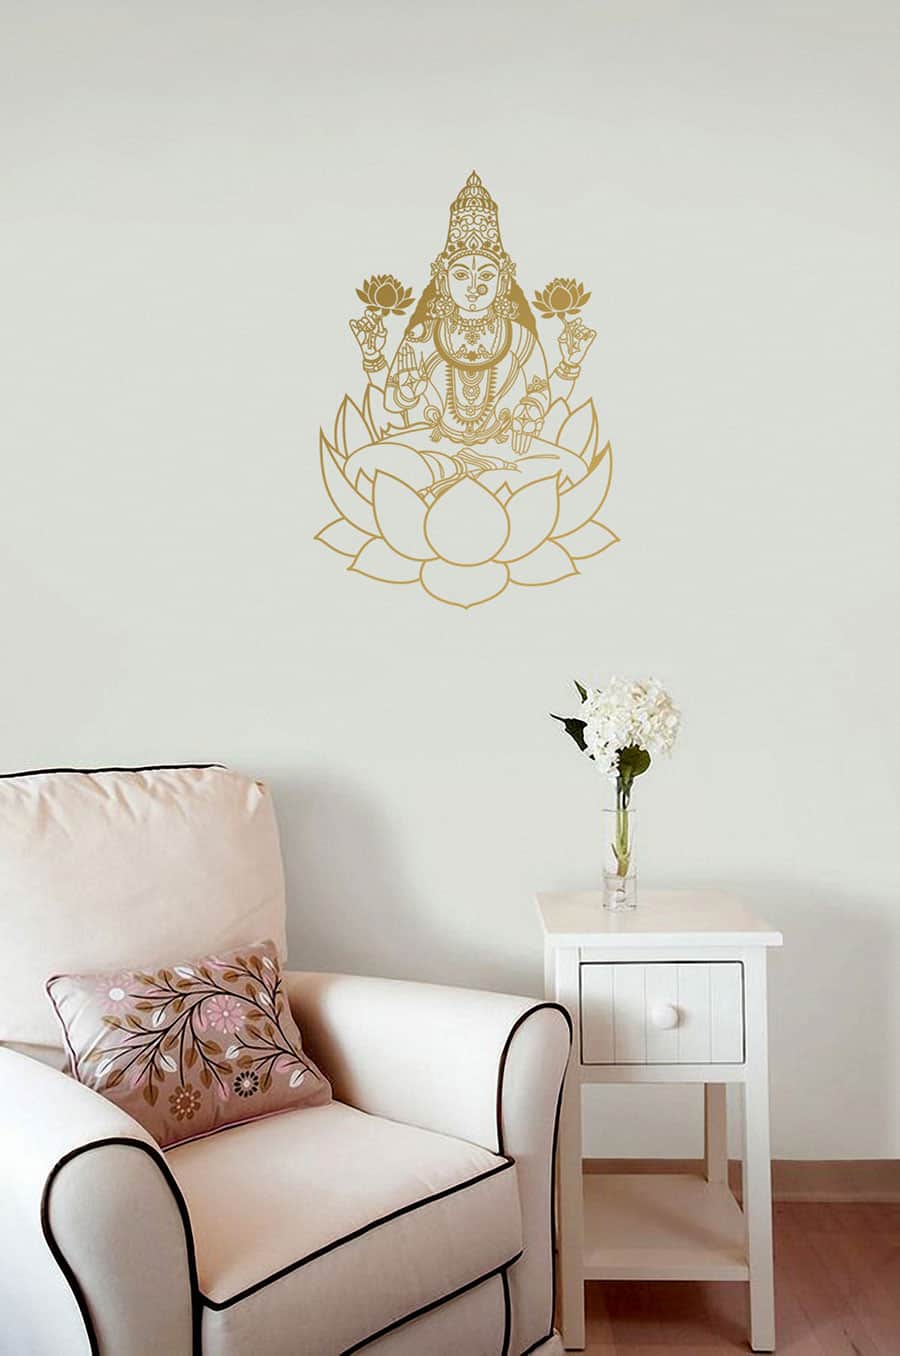 Goddess Lakshmi Wall Sticker